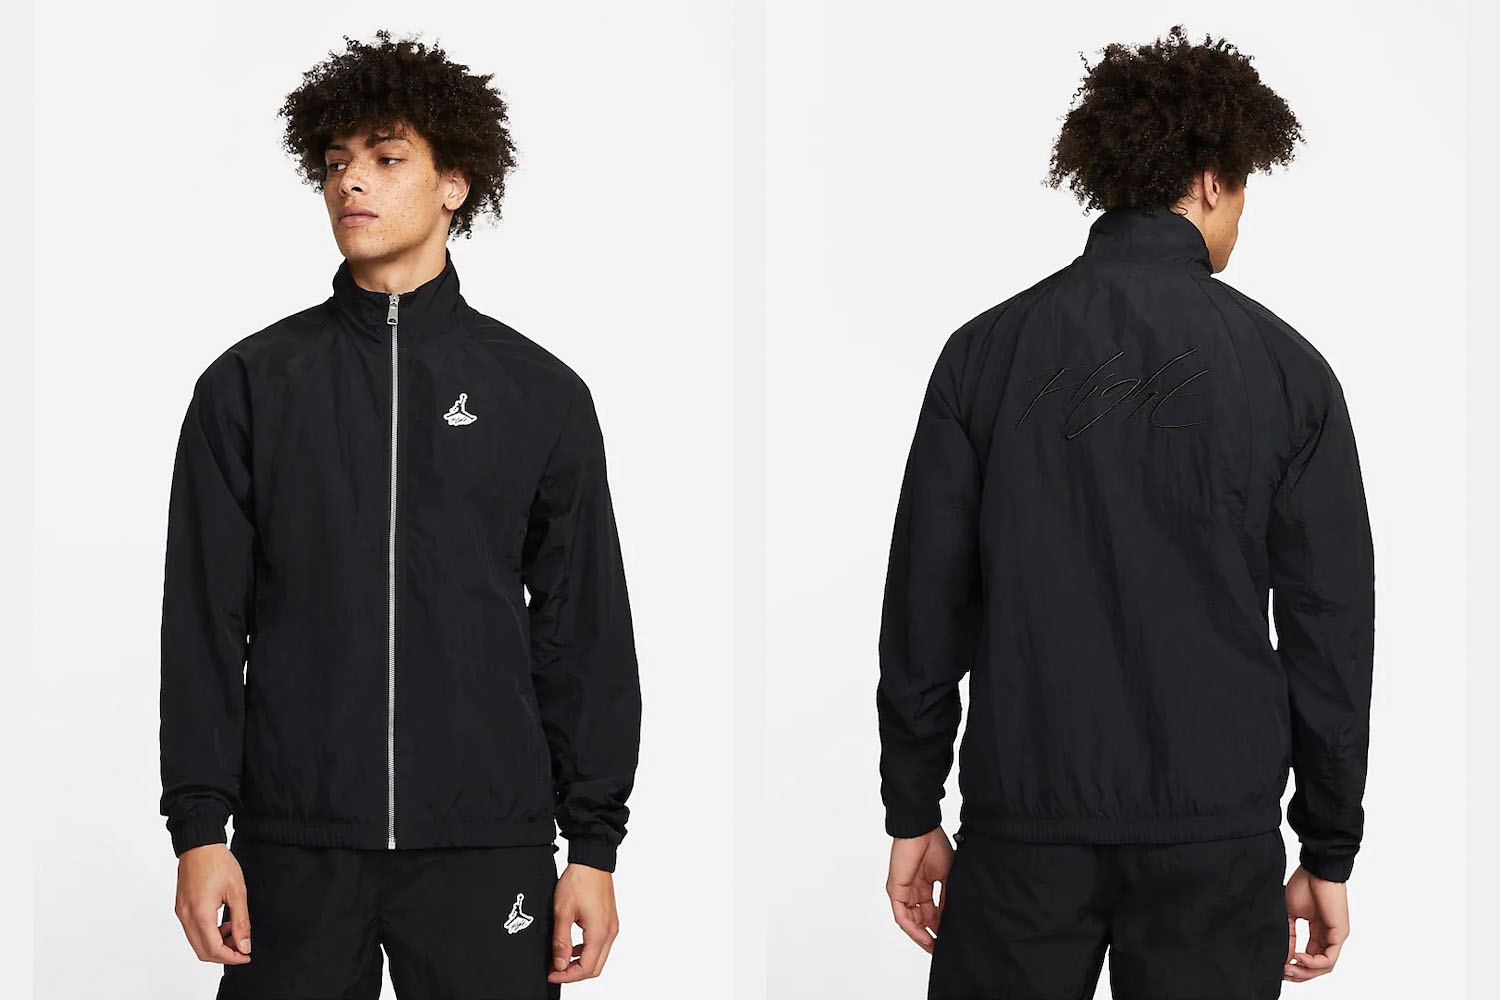 two model shots of a model in a Nike Jordan black warmup zip jacket